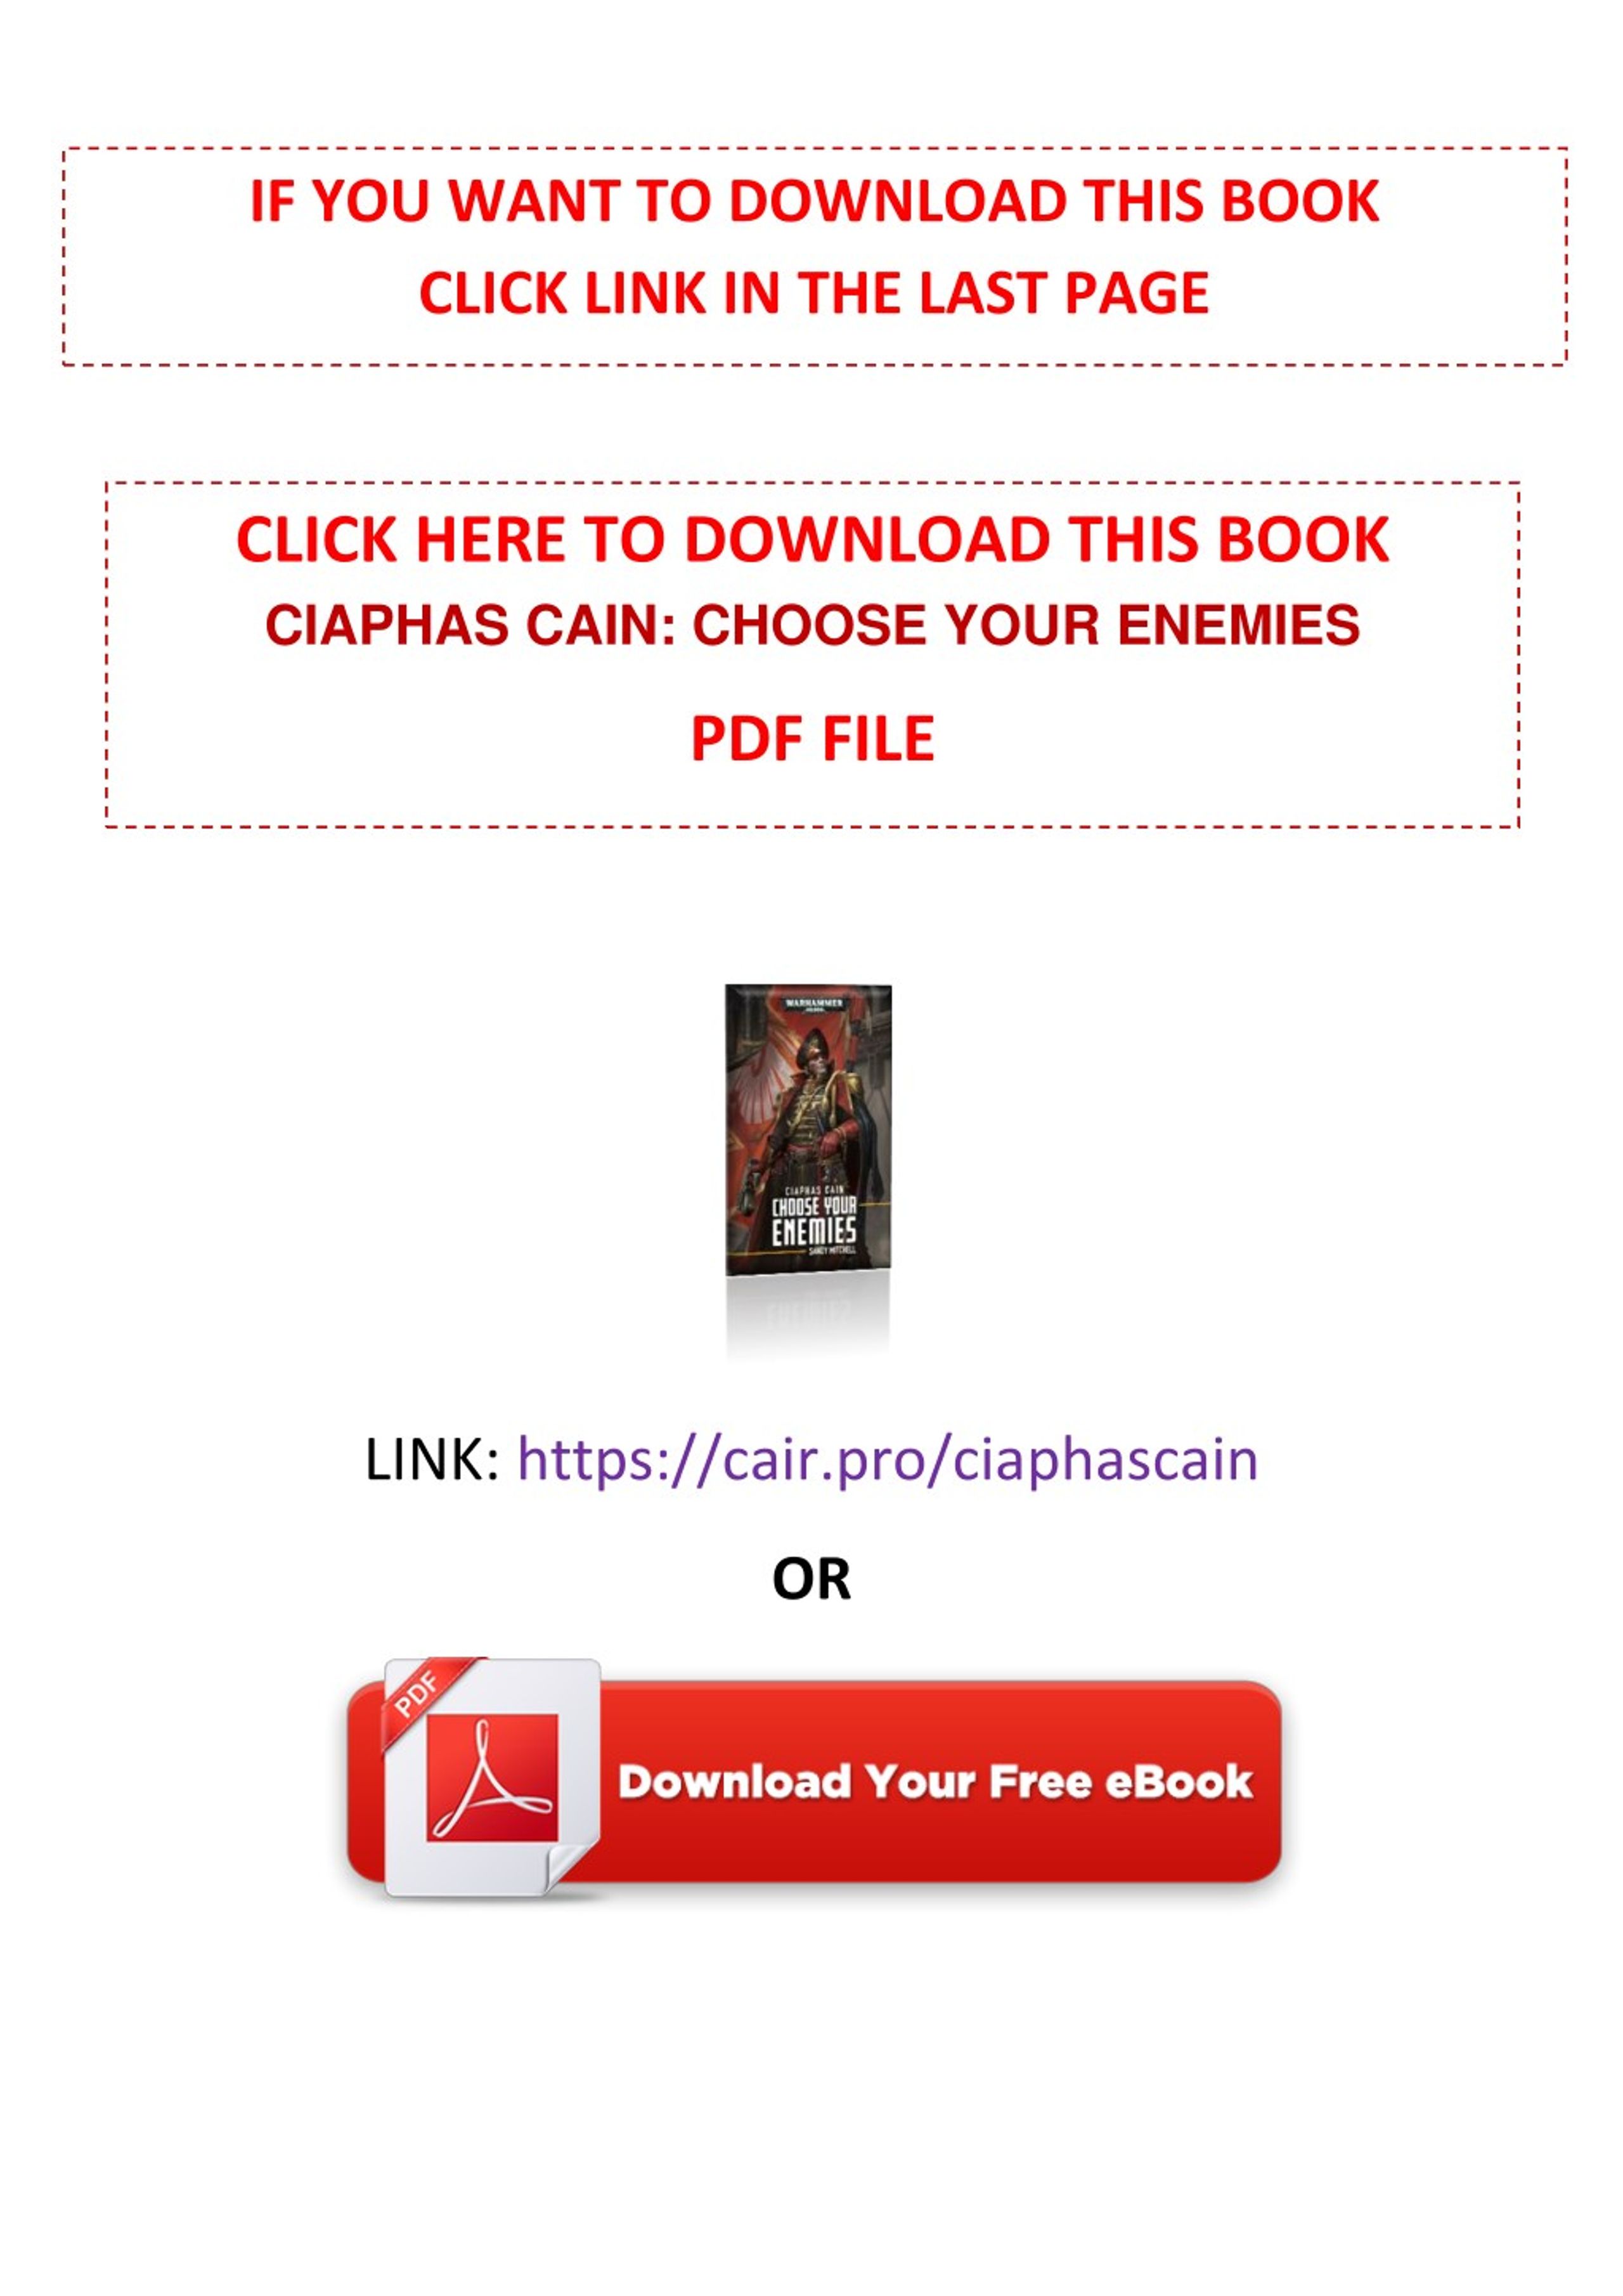 ciaphas cain choose your enemies pdf download